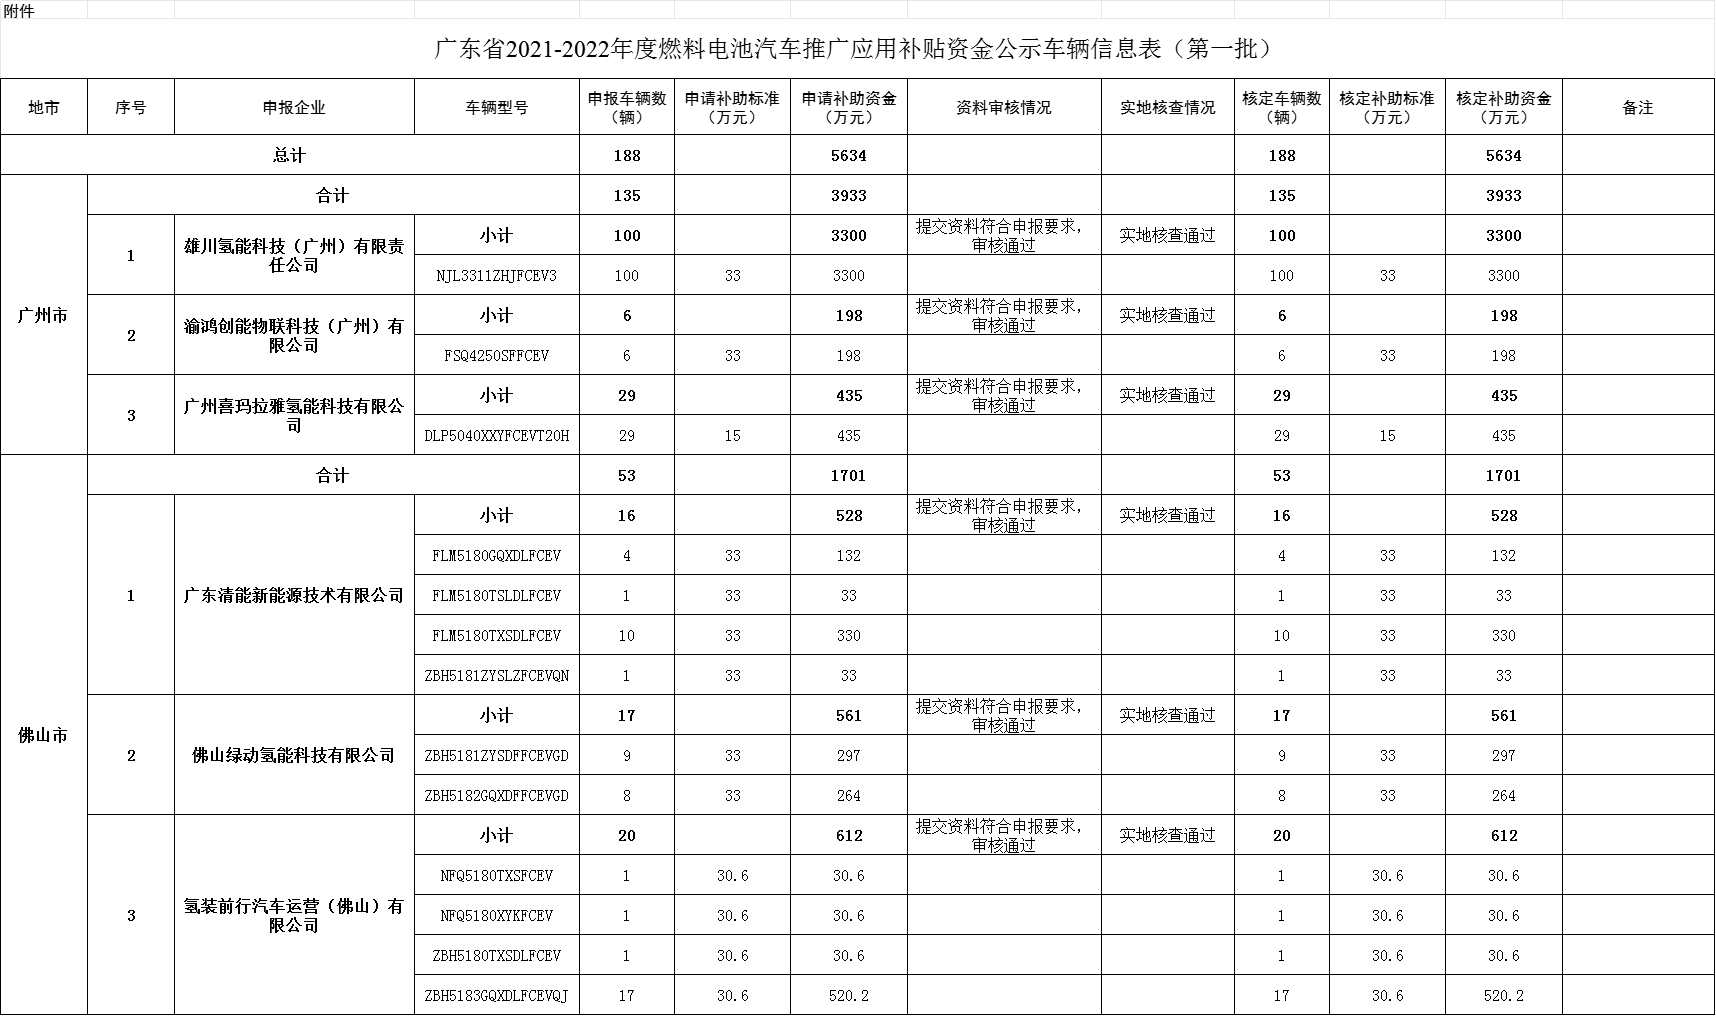 广东省2021-2022年度燃料电池汽车推广应用补贴资金公示车辆信息表(第一批)